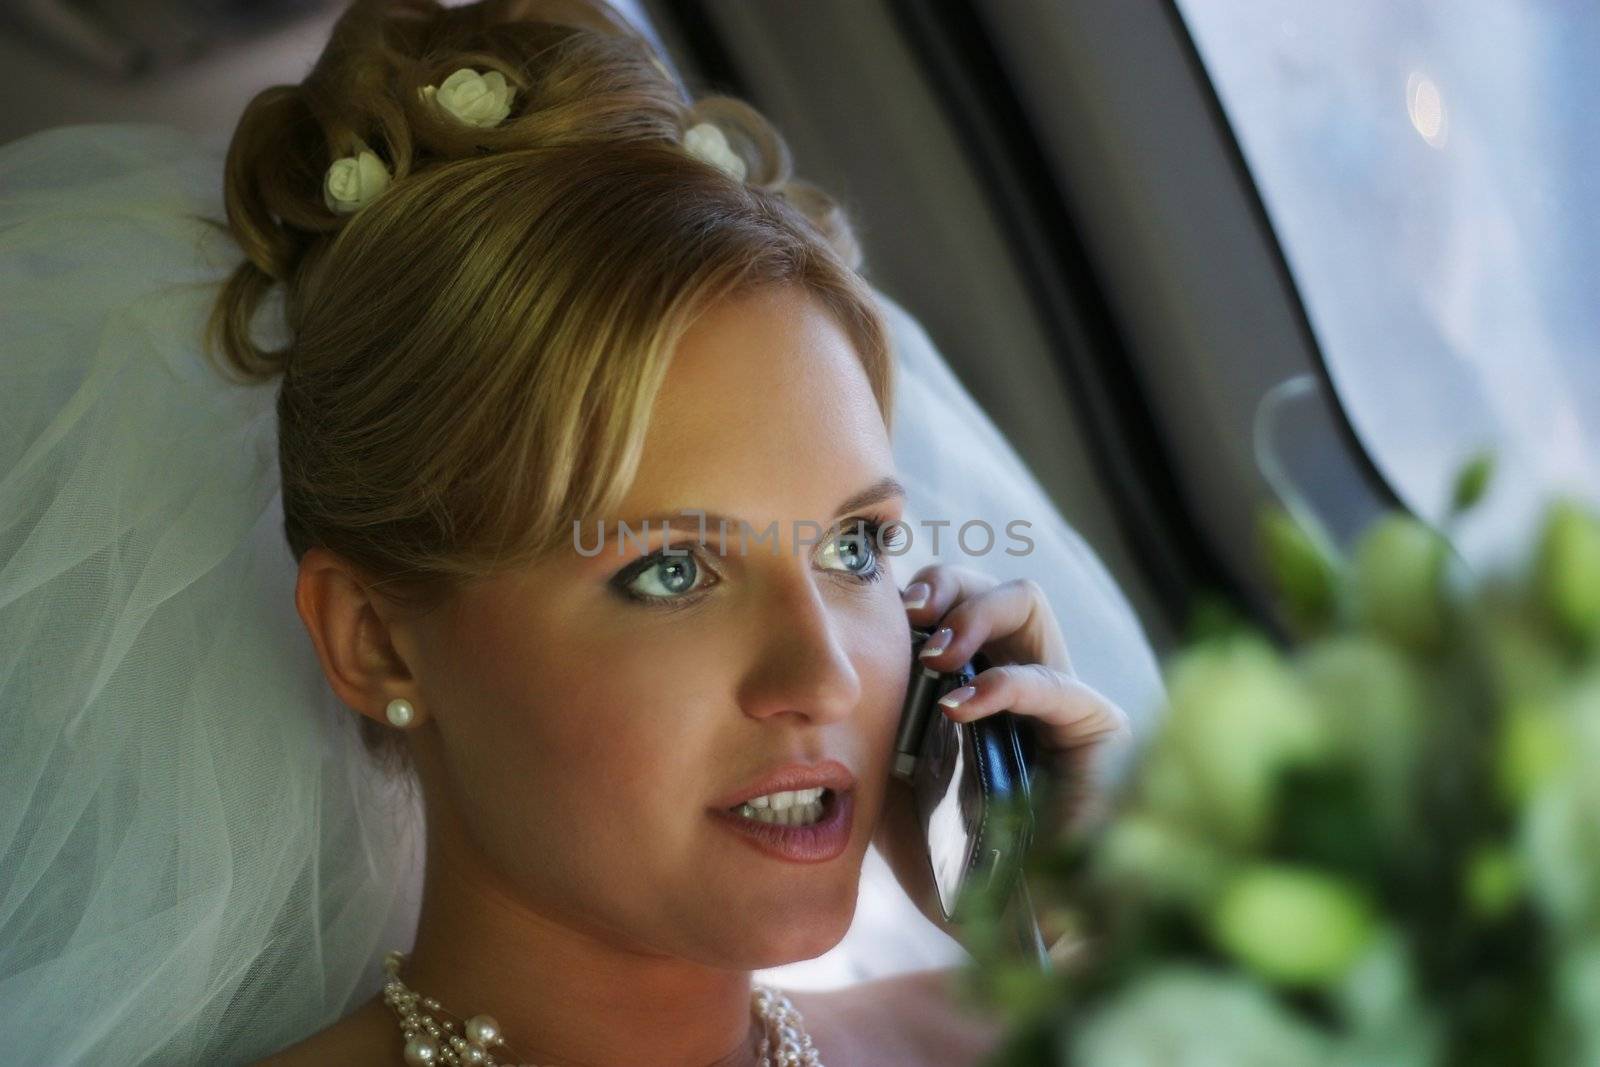 The beautiful bride in a car